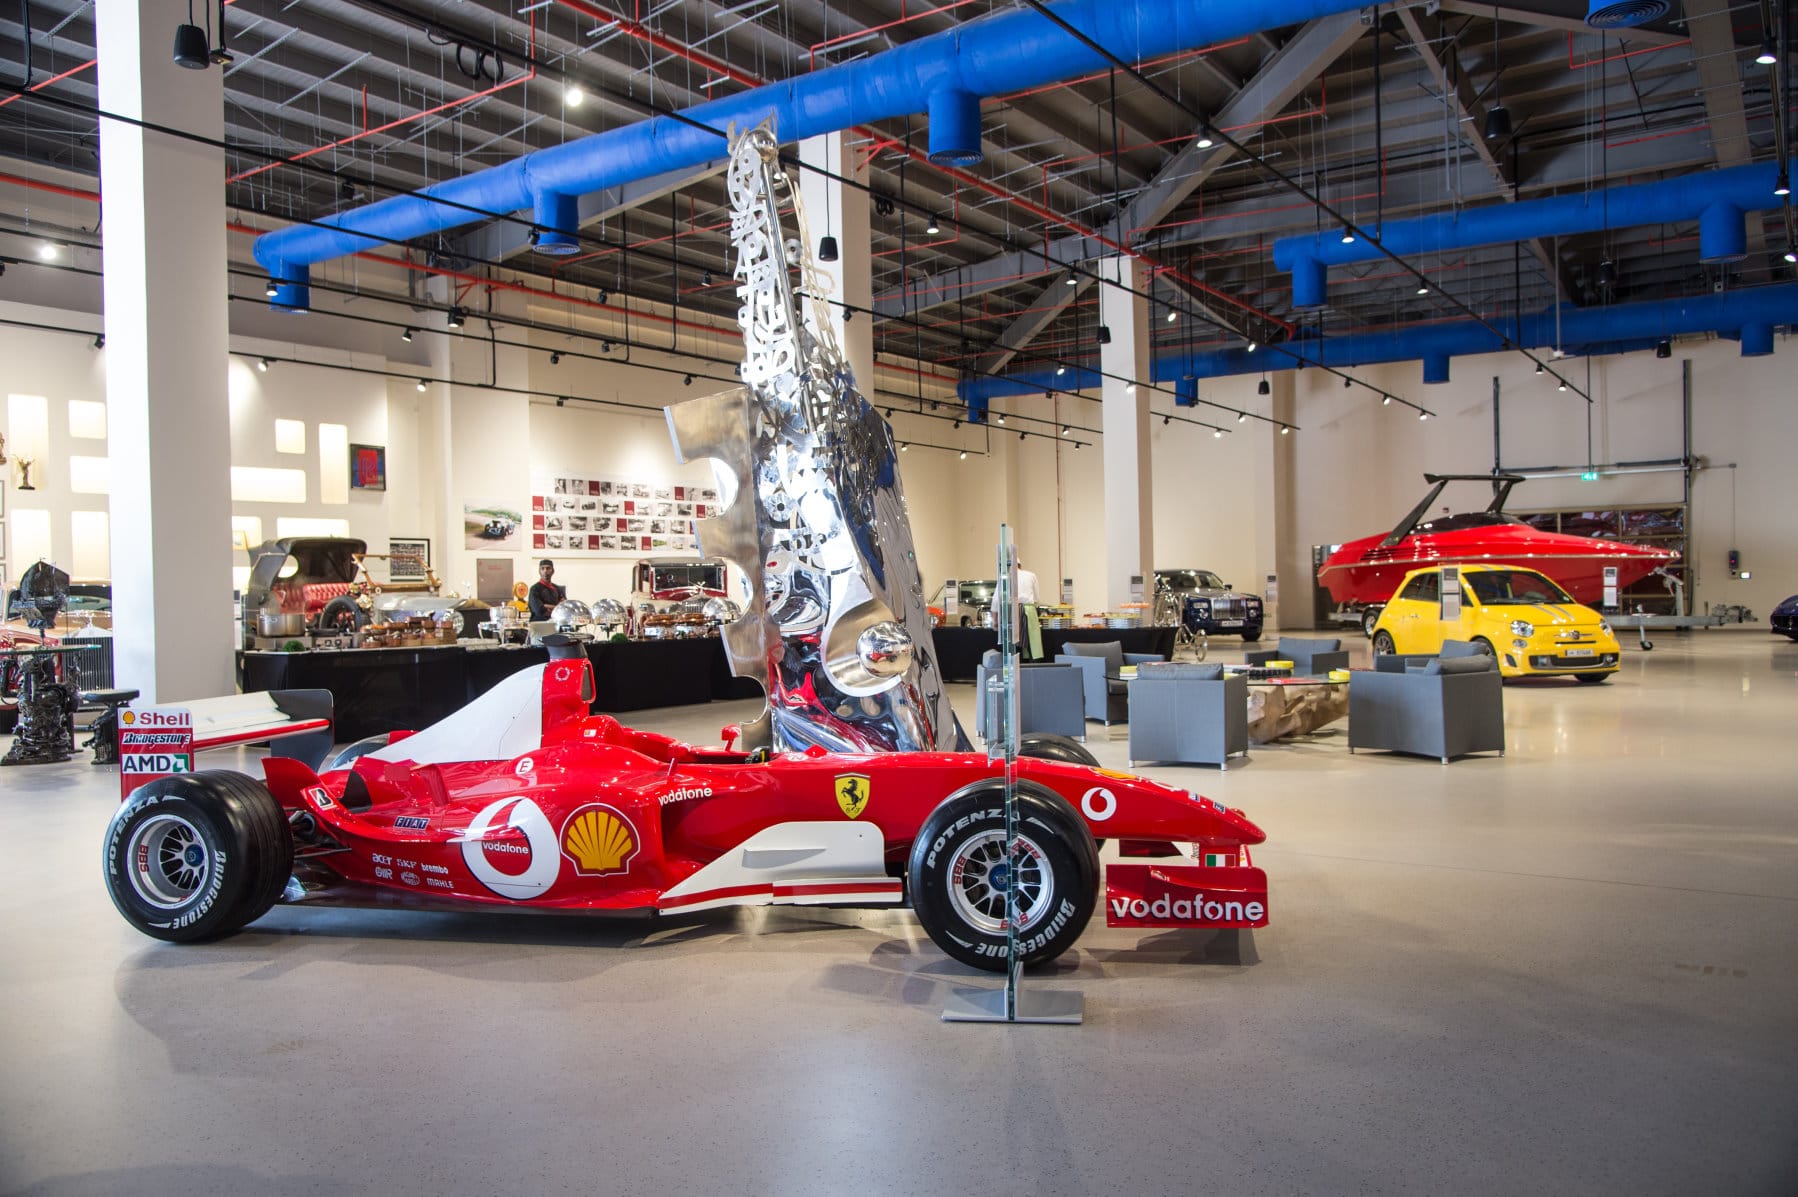 Auch ein Formel-1-Bolide von Ferrari darf in der Sammlung nicht fehlen.